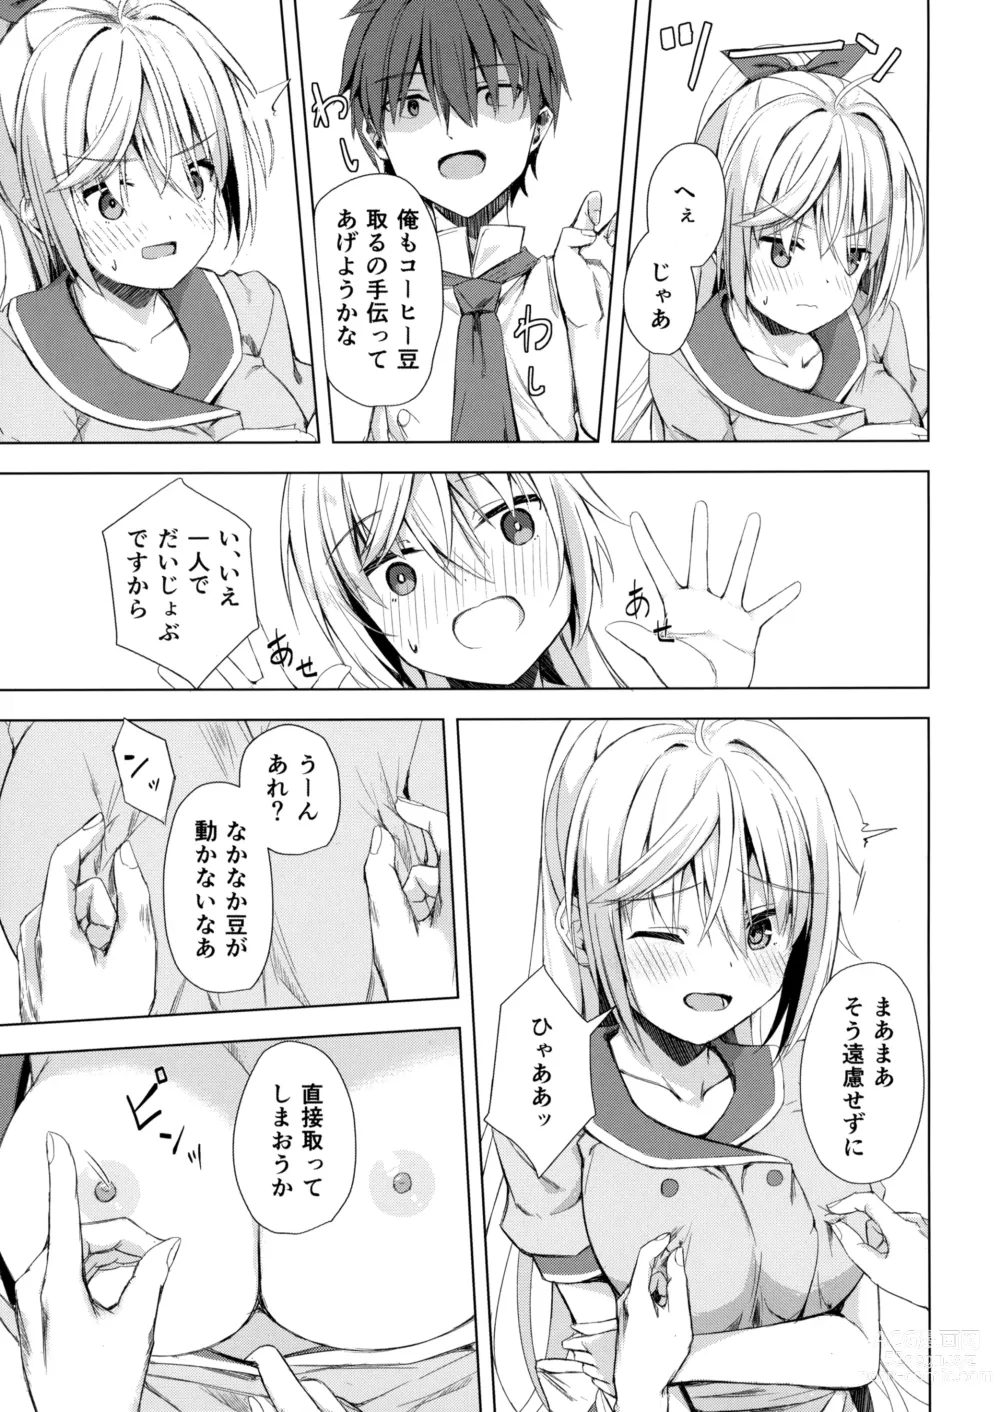 Page 6 of doujinshi Kan Coffee wa Ikaga?